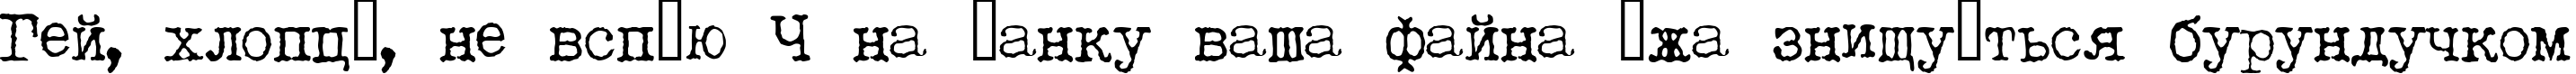 Пример написания шрифтом LetteraTrentadue текста на украинском